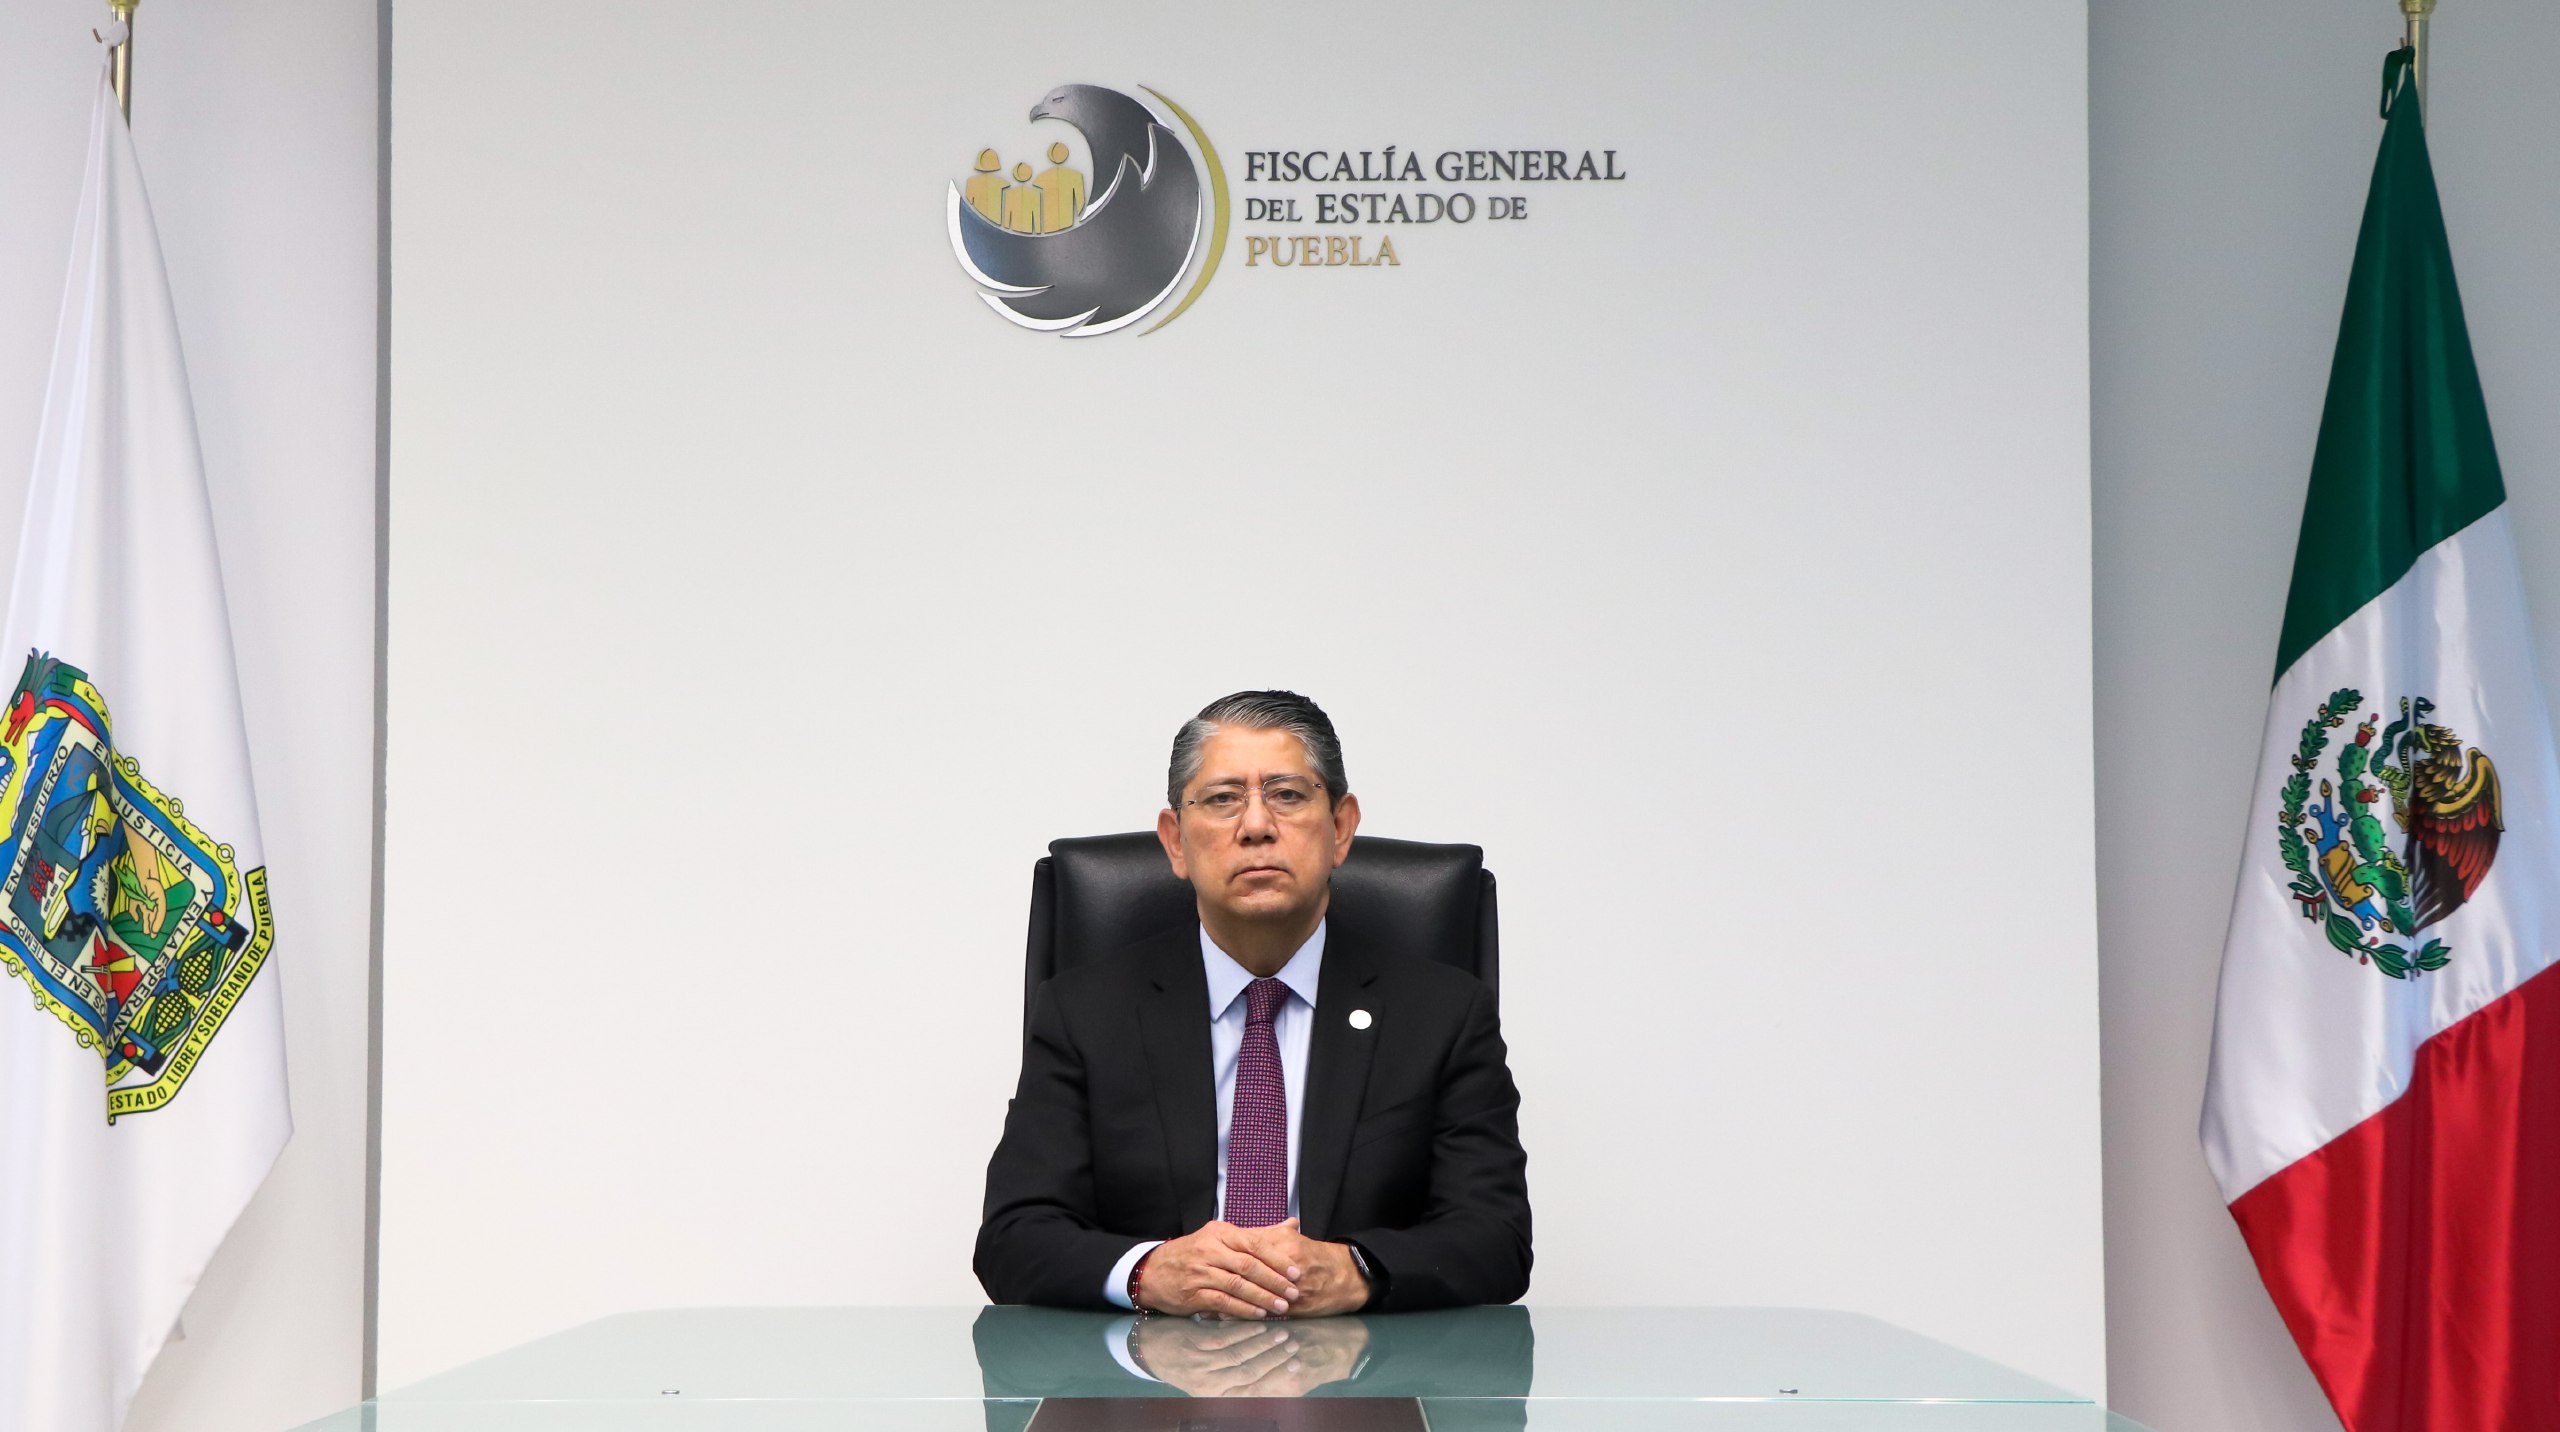 El fiscal comentó que habrá coordinación con las autoridades capitalinas en el caso (Foto: Fiscalía de Puebla)